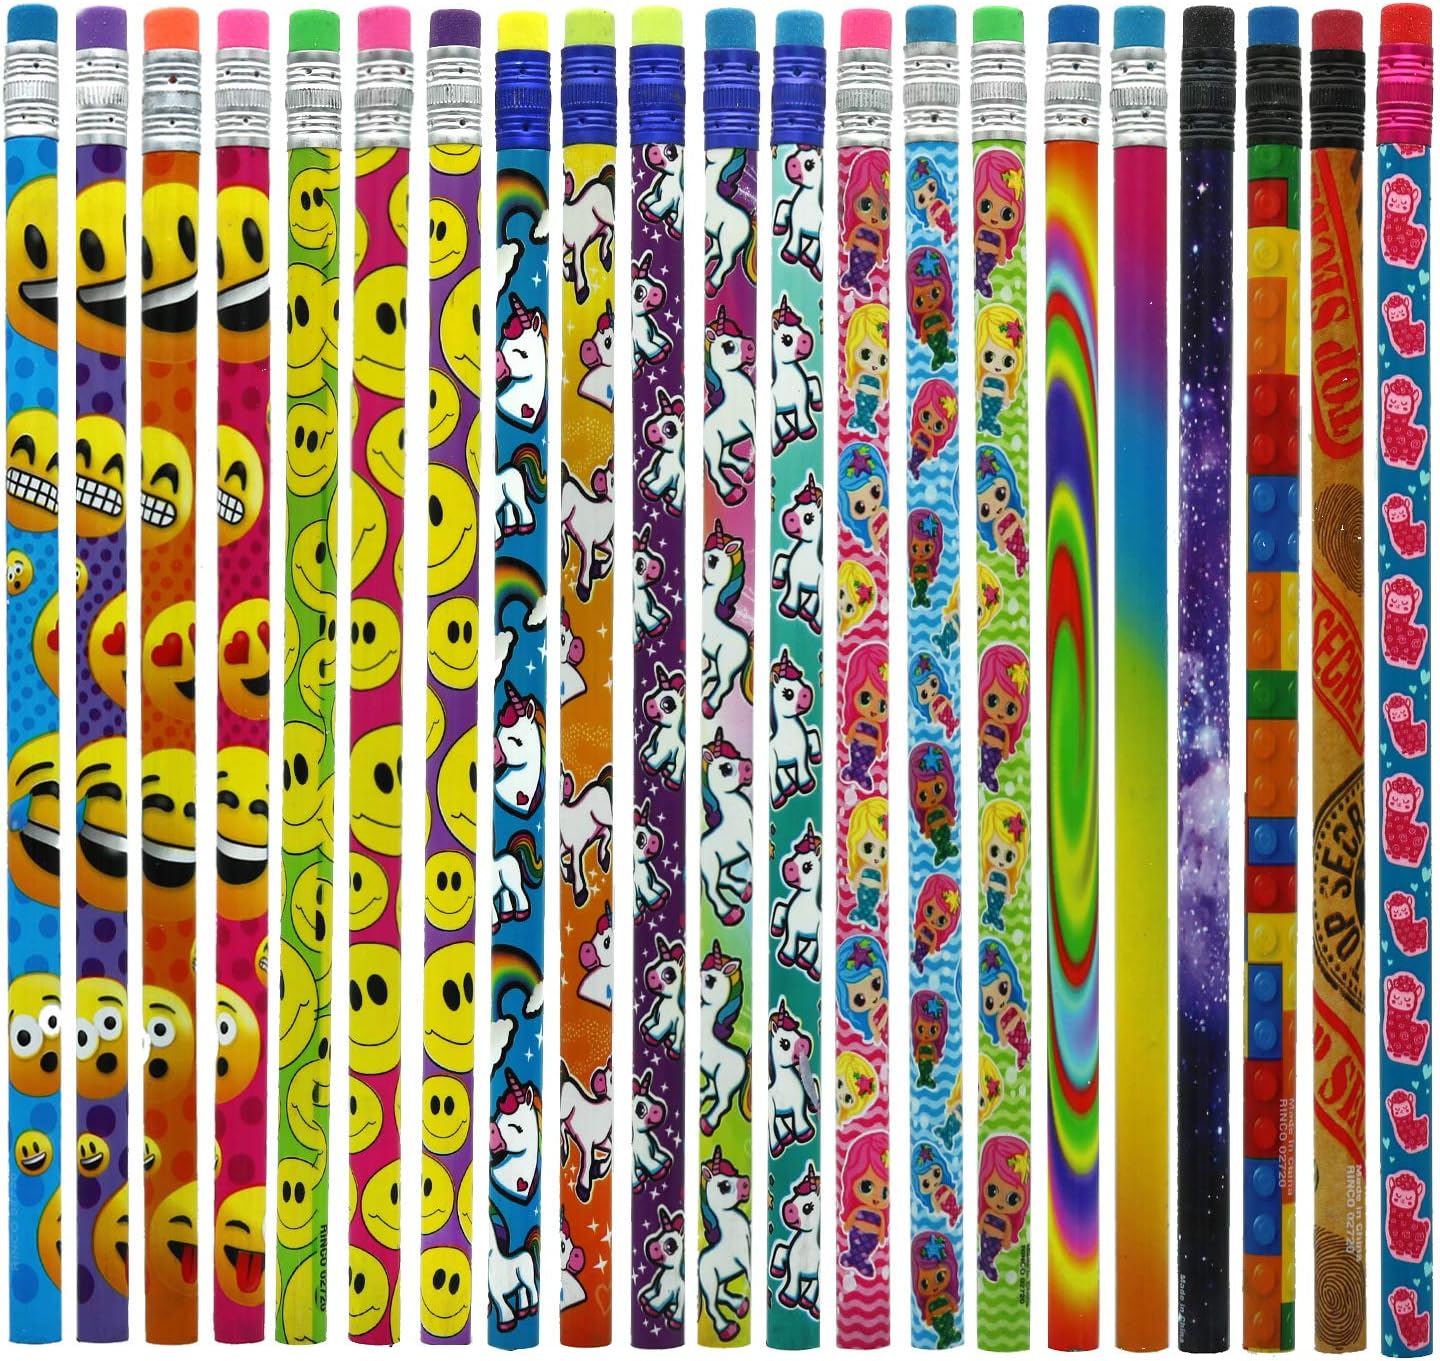 GIFTEXPRESS 144pcs Pencil Assortment, Assorted Colors Wooden Pencil